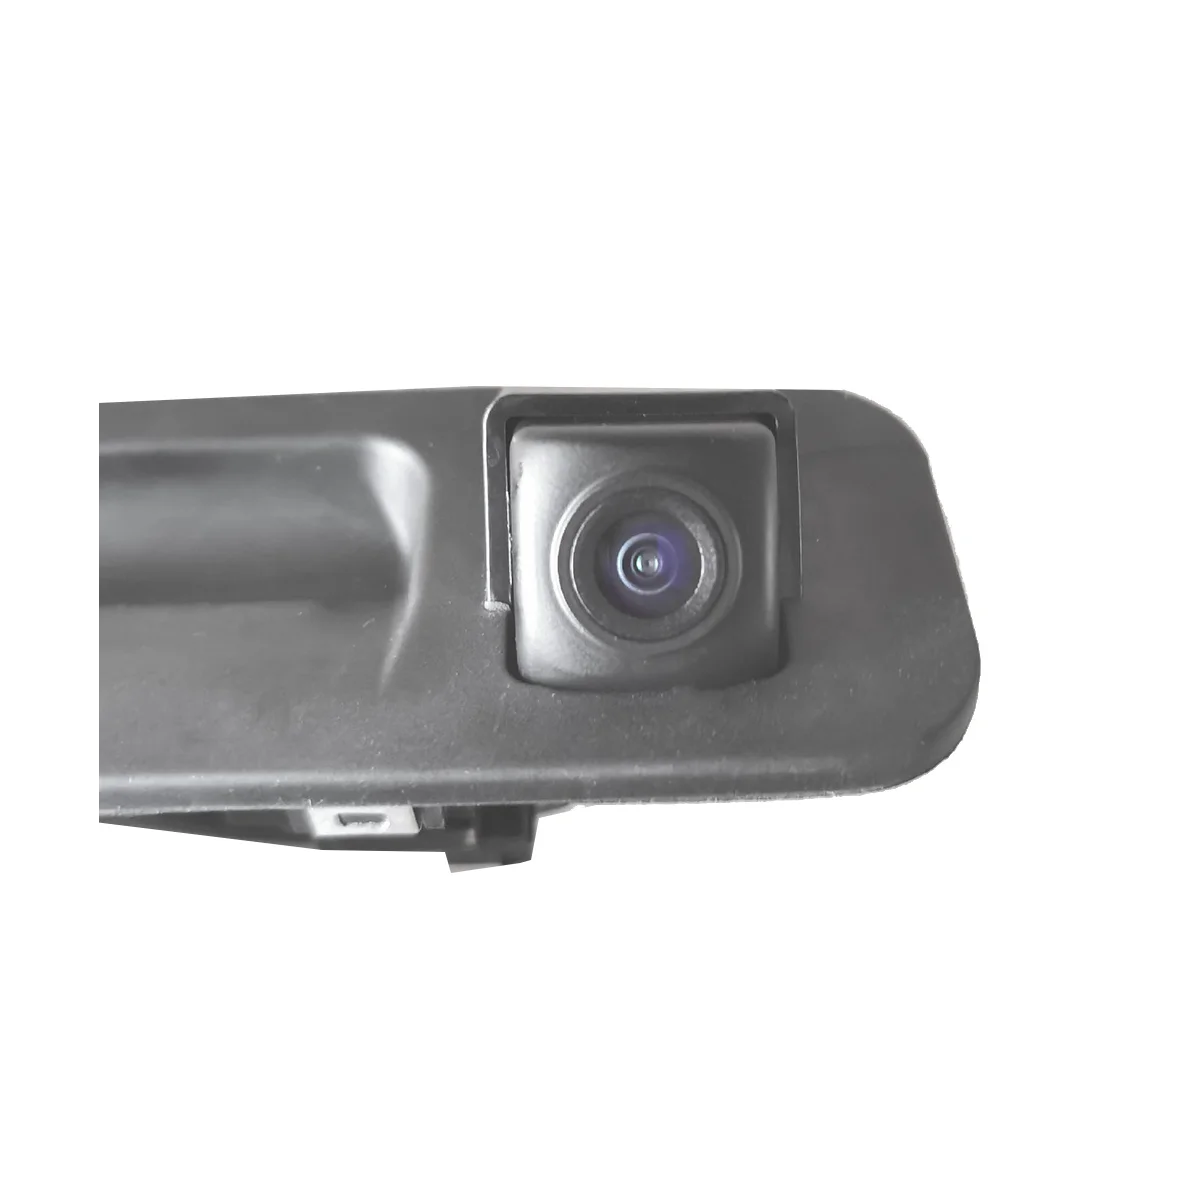 Камера за задно виждане 95760-E6201 за Hyundai Sonata 2015-2017 Помещение за Помощ при Паркиране на Заден Ход с Ключа на Багажника 95760 C1100